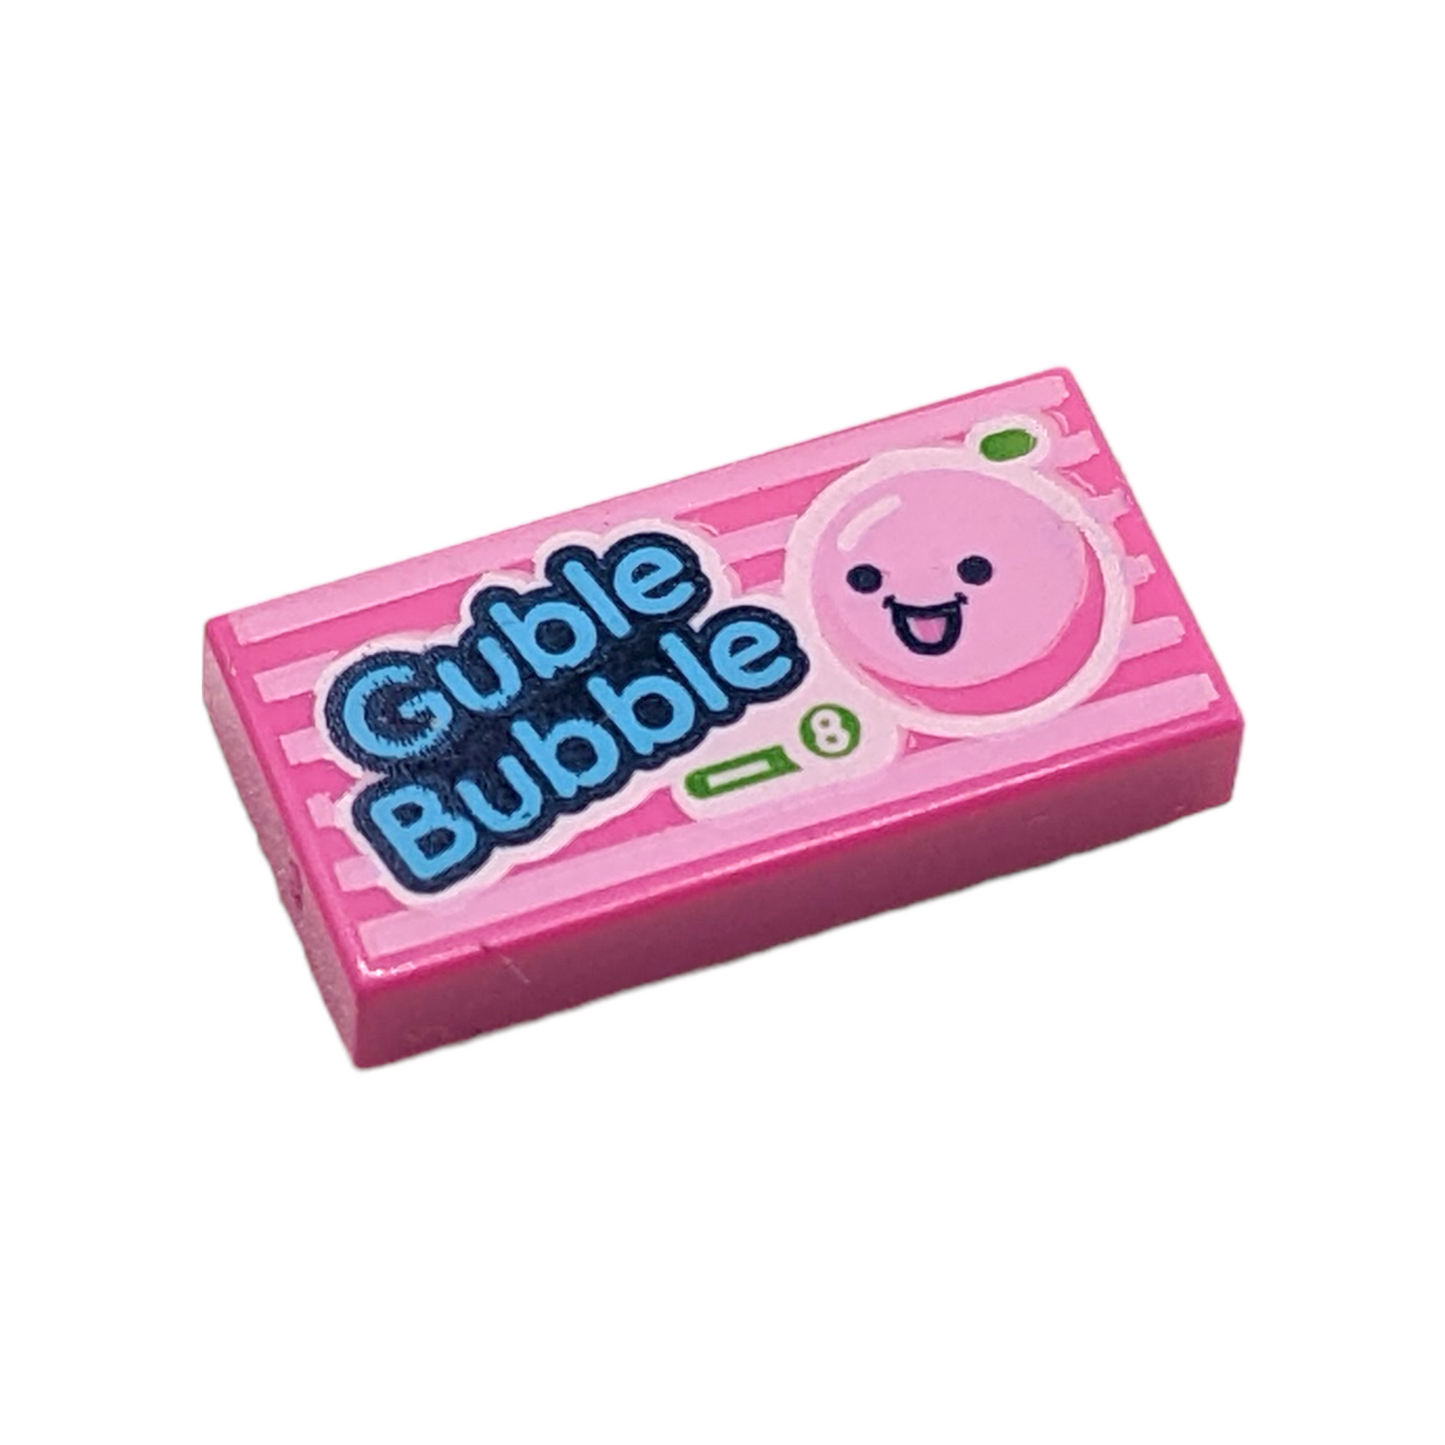 LEGO Tile 1x2 - Guble Bubble Gum